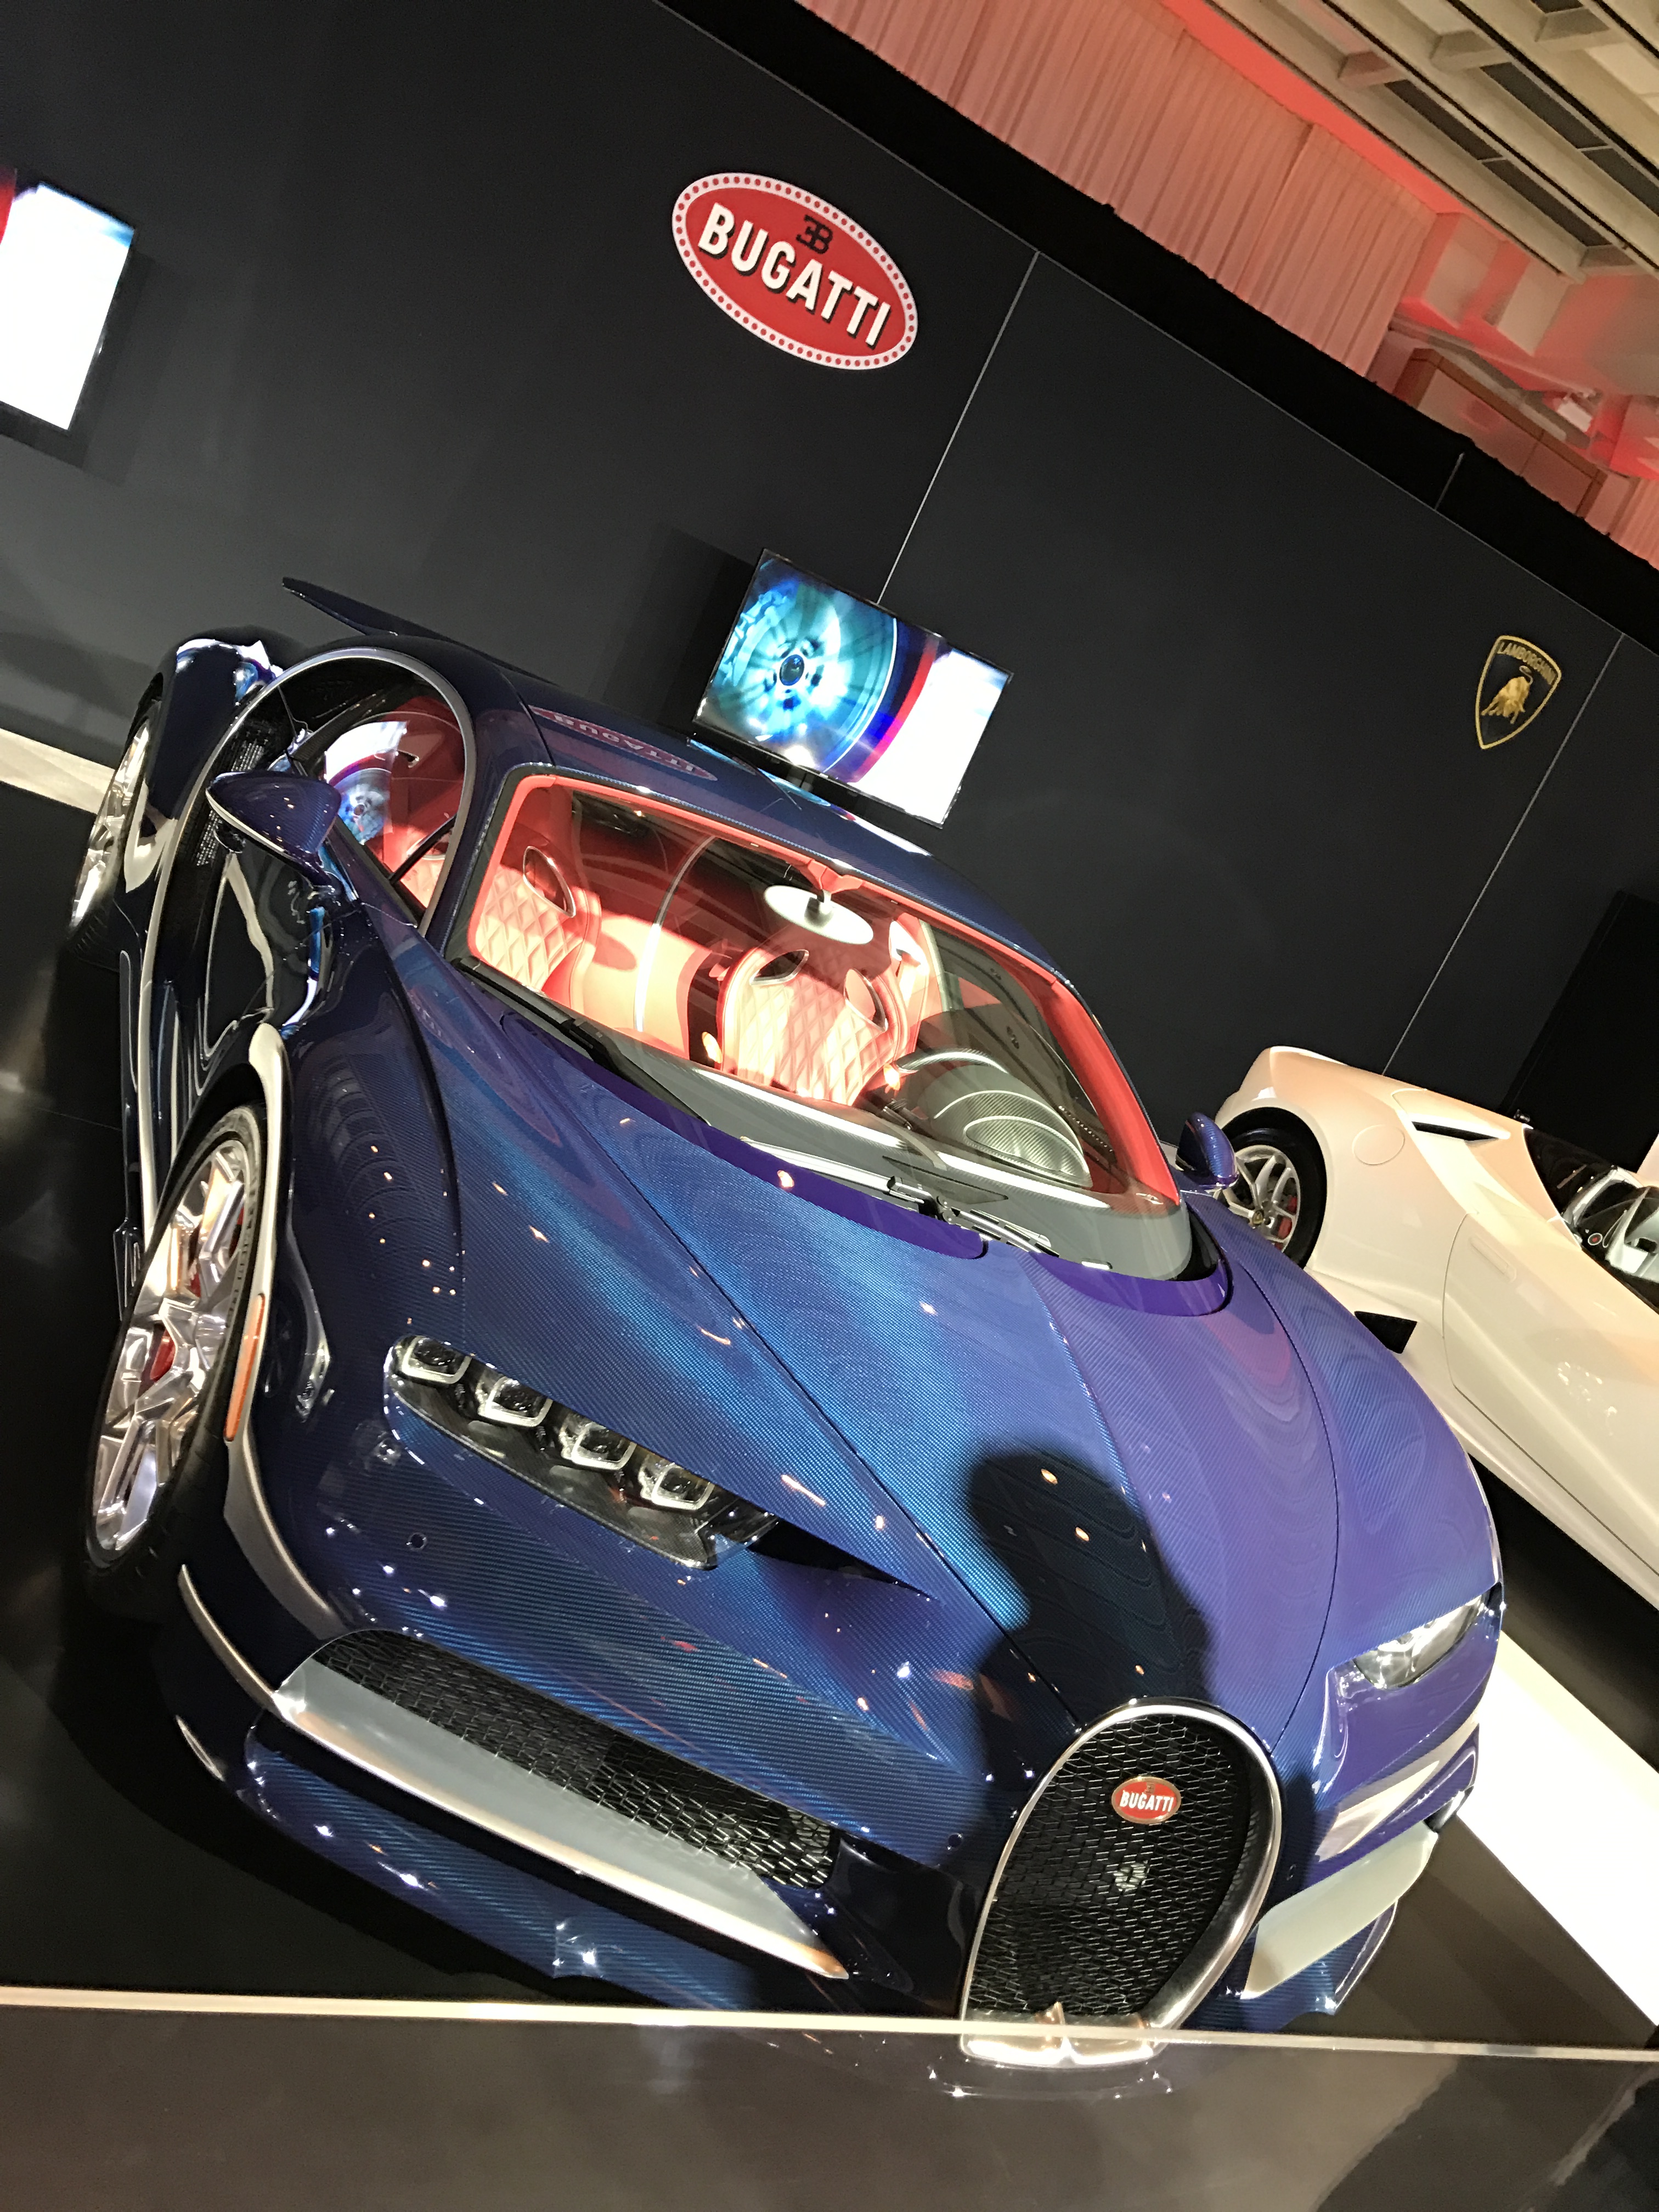 Bugatti - Canadian International Autoshow #CIAS2017